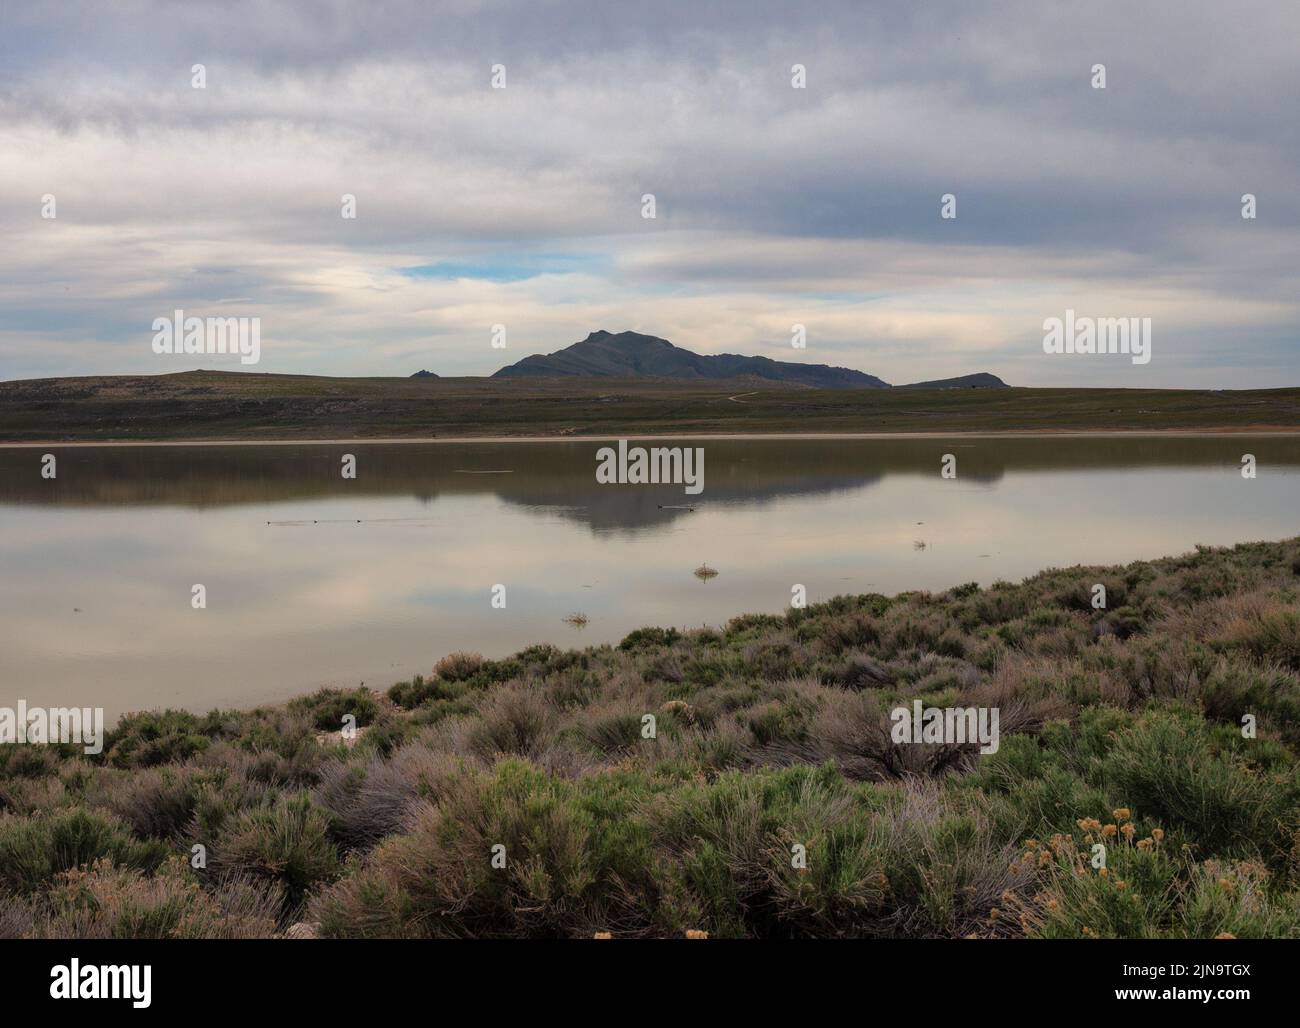 Réflexion des nuages et de la montagne dans l'eau. Great Salt Lake, Utah. Banque D'Images